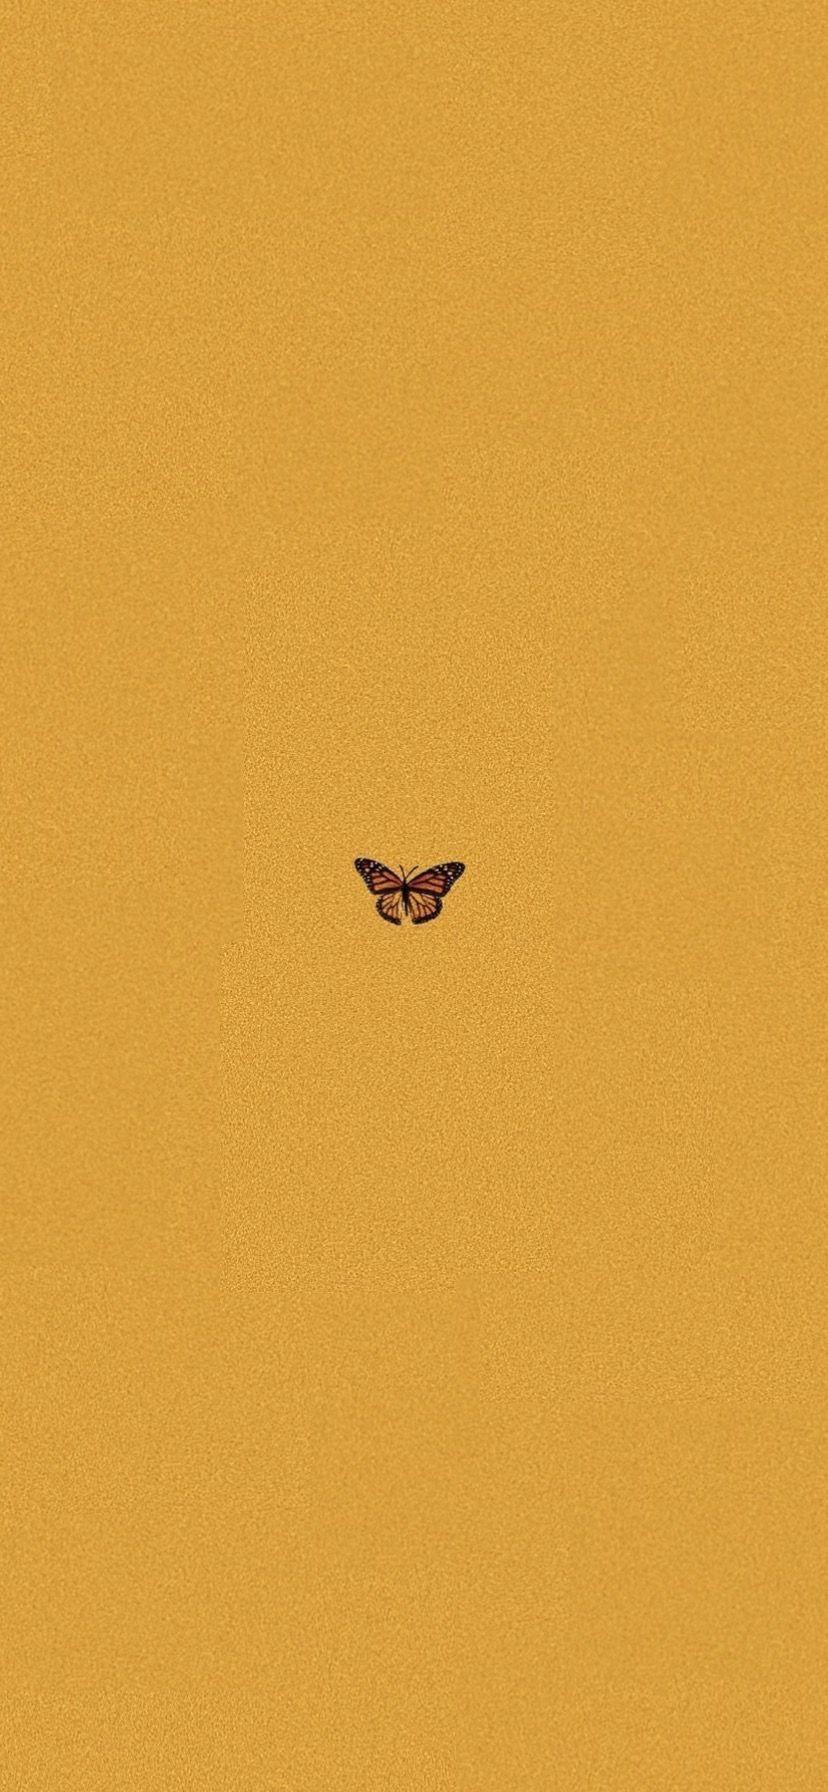 828x1792 Aesthetic - Hình nền, con bướm thẩm mỹ màu vàng IPhone X #yellowaesthetic Wallpaper, xin chào &;